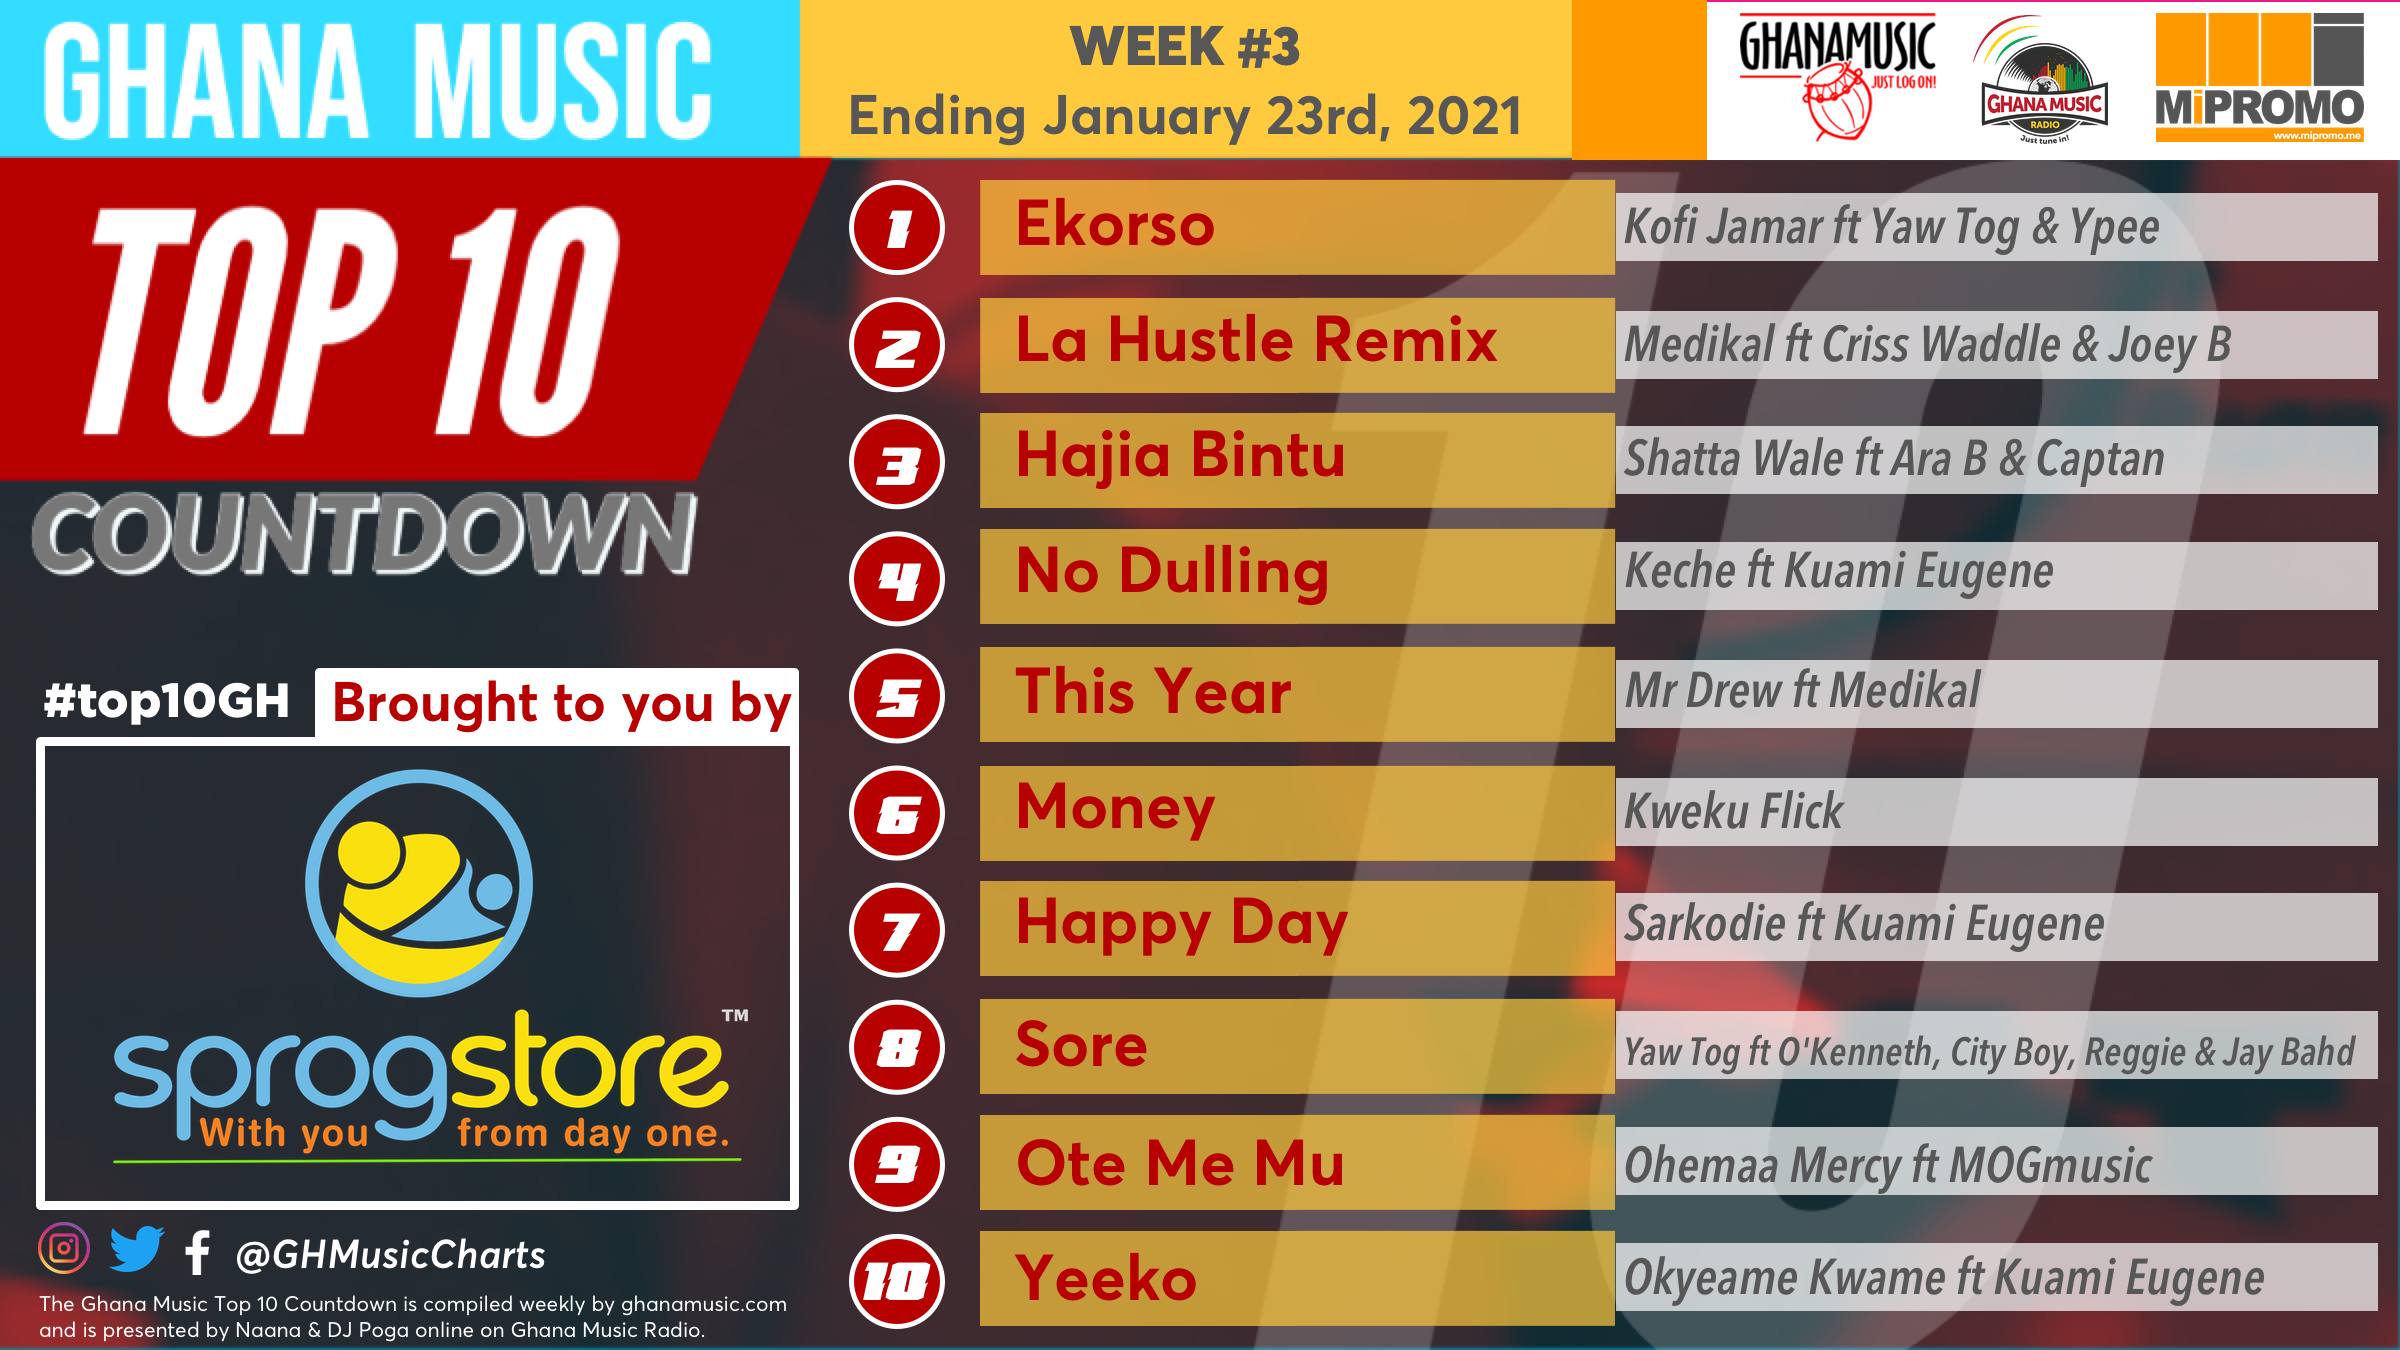 2021 Week 3: Ghana Music Top 10 Countdown